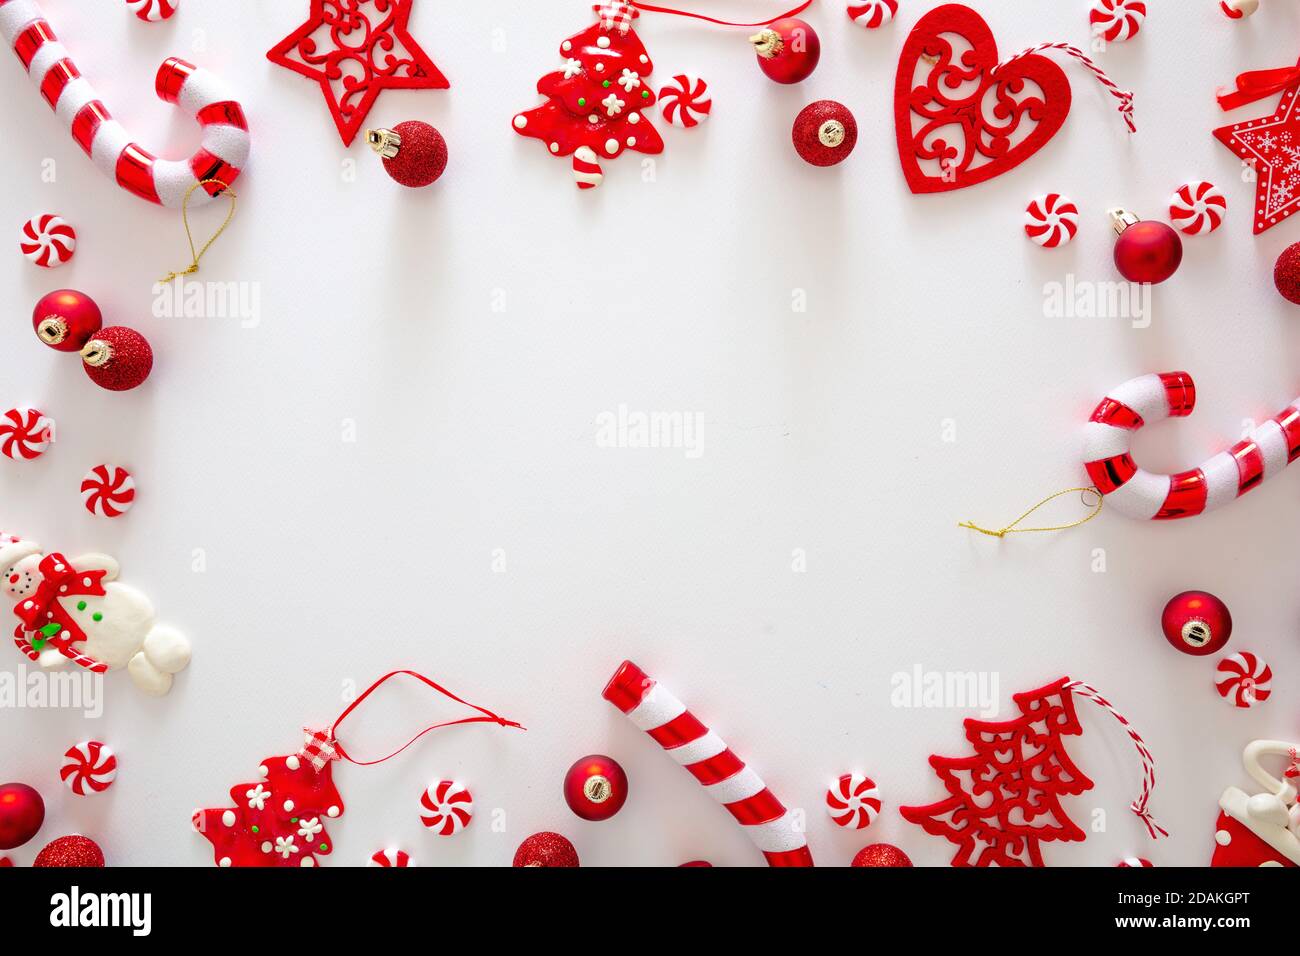 Weihnachtsschmuck Kugeln und süße Bonbons rote Farbe vor weißem Hintergrund, Weihnachtsrahmen flach legen, Urlaub Grußkarte Vorlage, Draufsicht Stockfoto